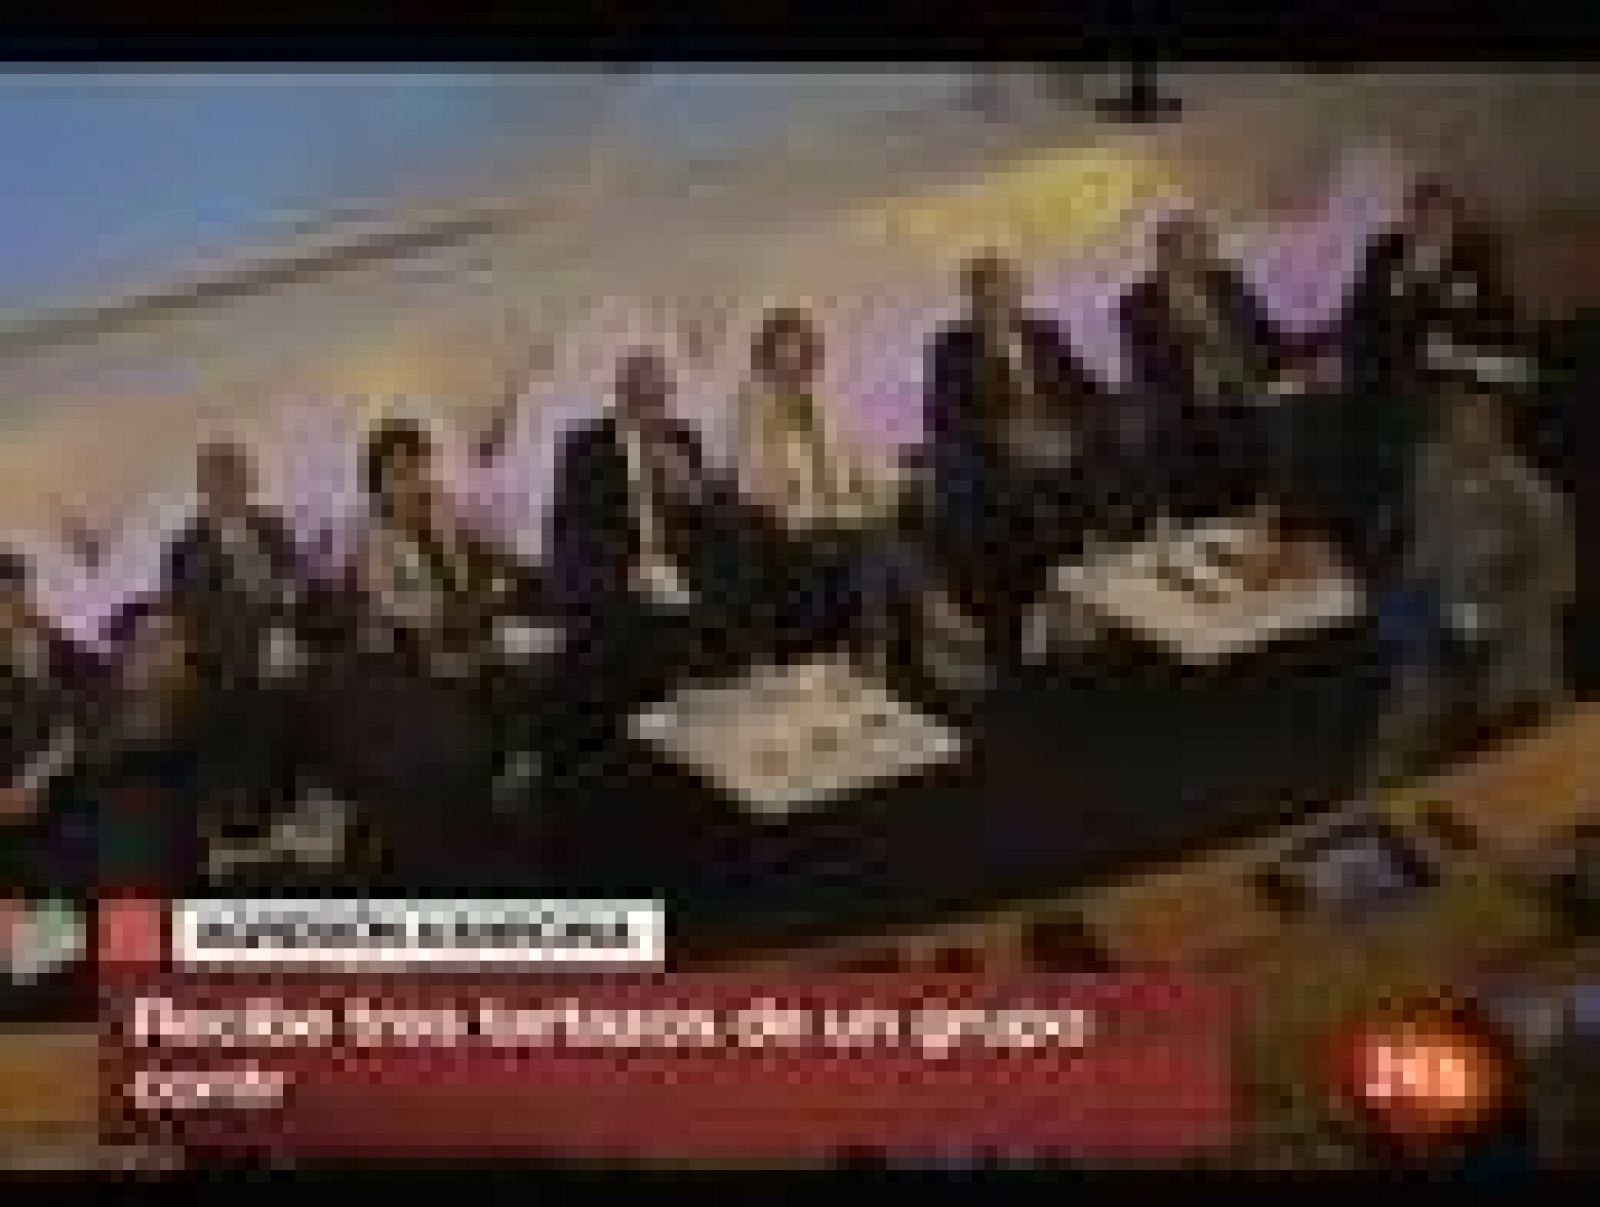 La presidenta de Navarra ,Yolanda Barcina, ha recibido tres "tartazos" cuando participaba en Toulouse en una reunión en la que se hablaba del proyecto del tren de alta velocidad. Los agresores son de "Mugitu", un grupo abertzale, contrario al proyect